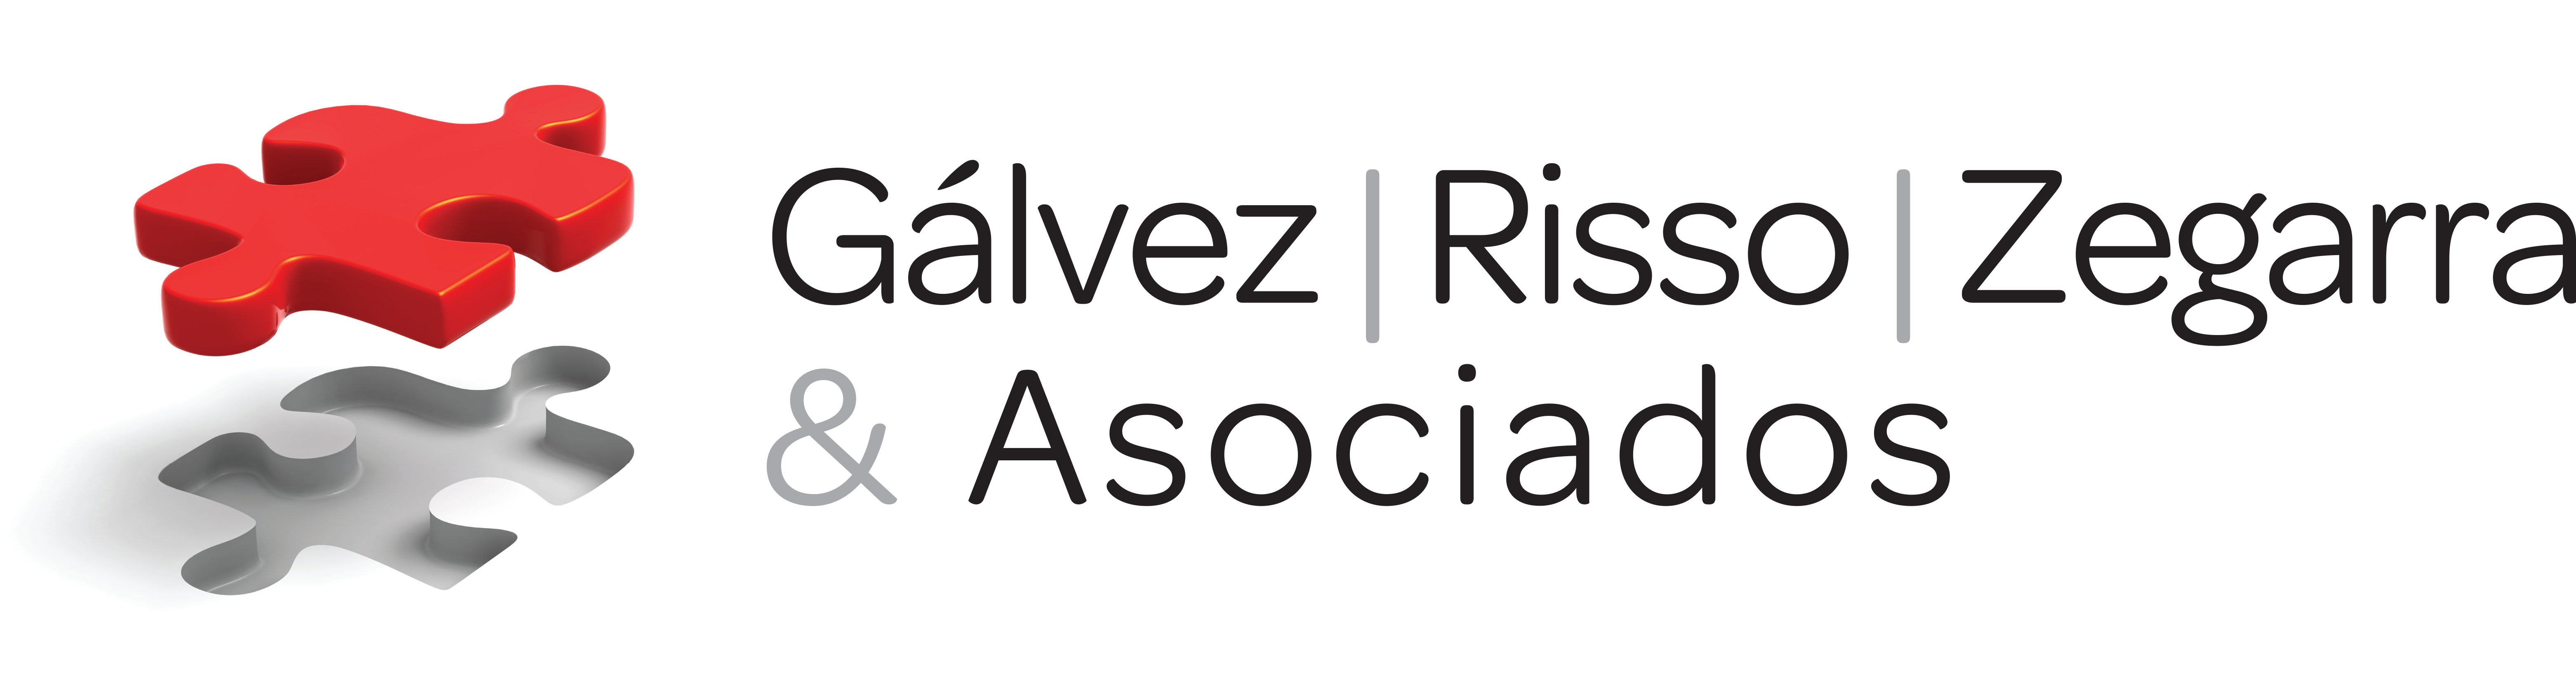 the Gálvez Risso Zegarra & Asociados logo.